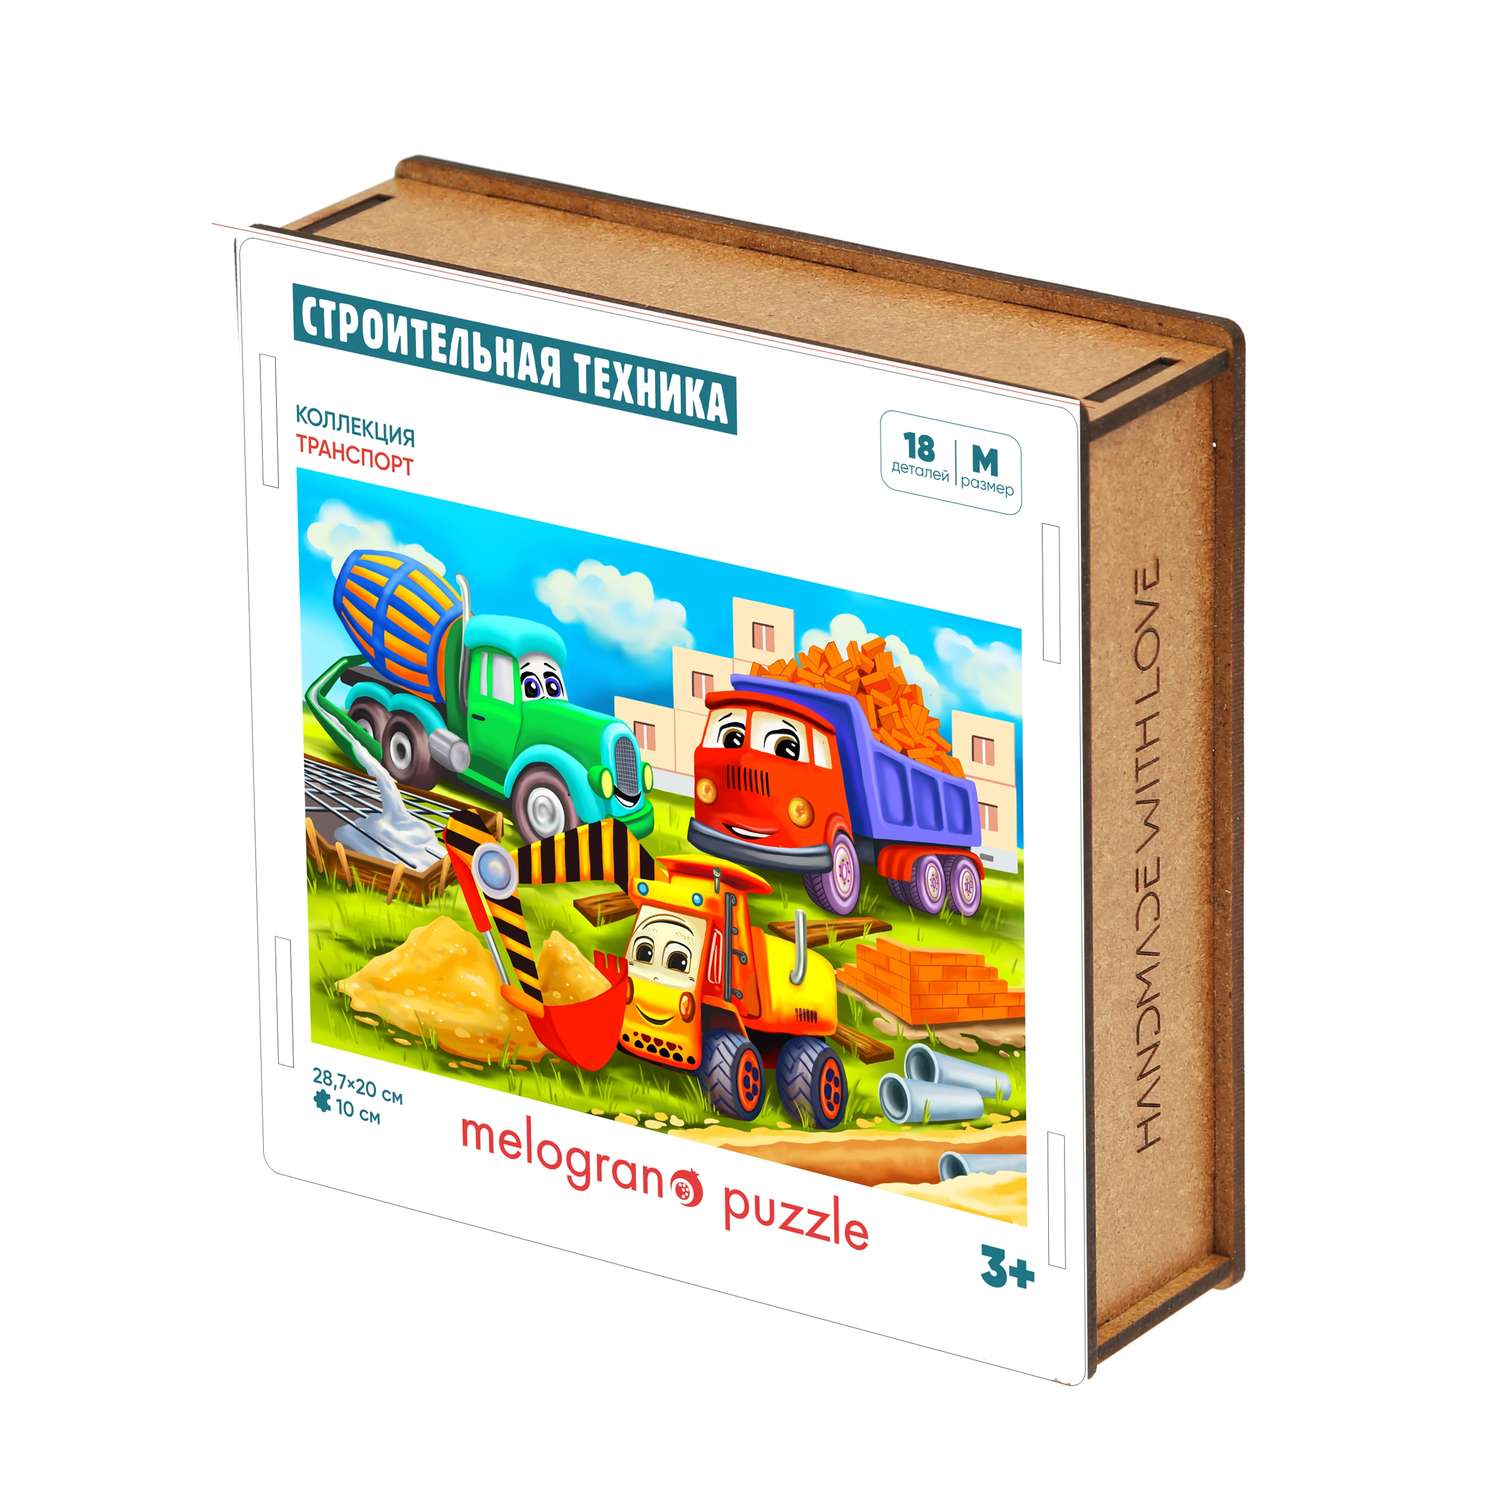 Деревянный пазл Melograno puzzle Строительная техника. 18 деталей - фото 2